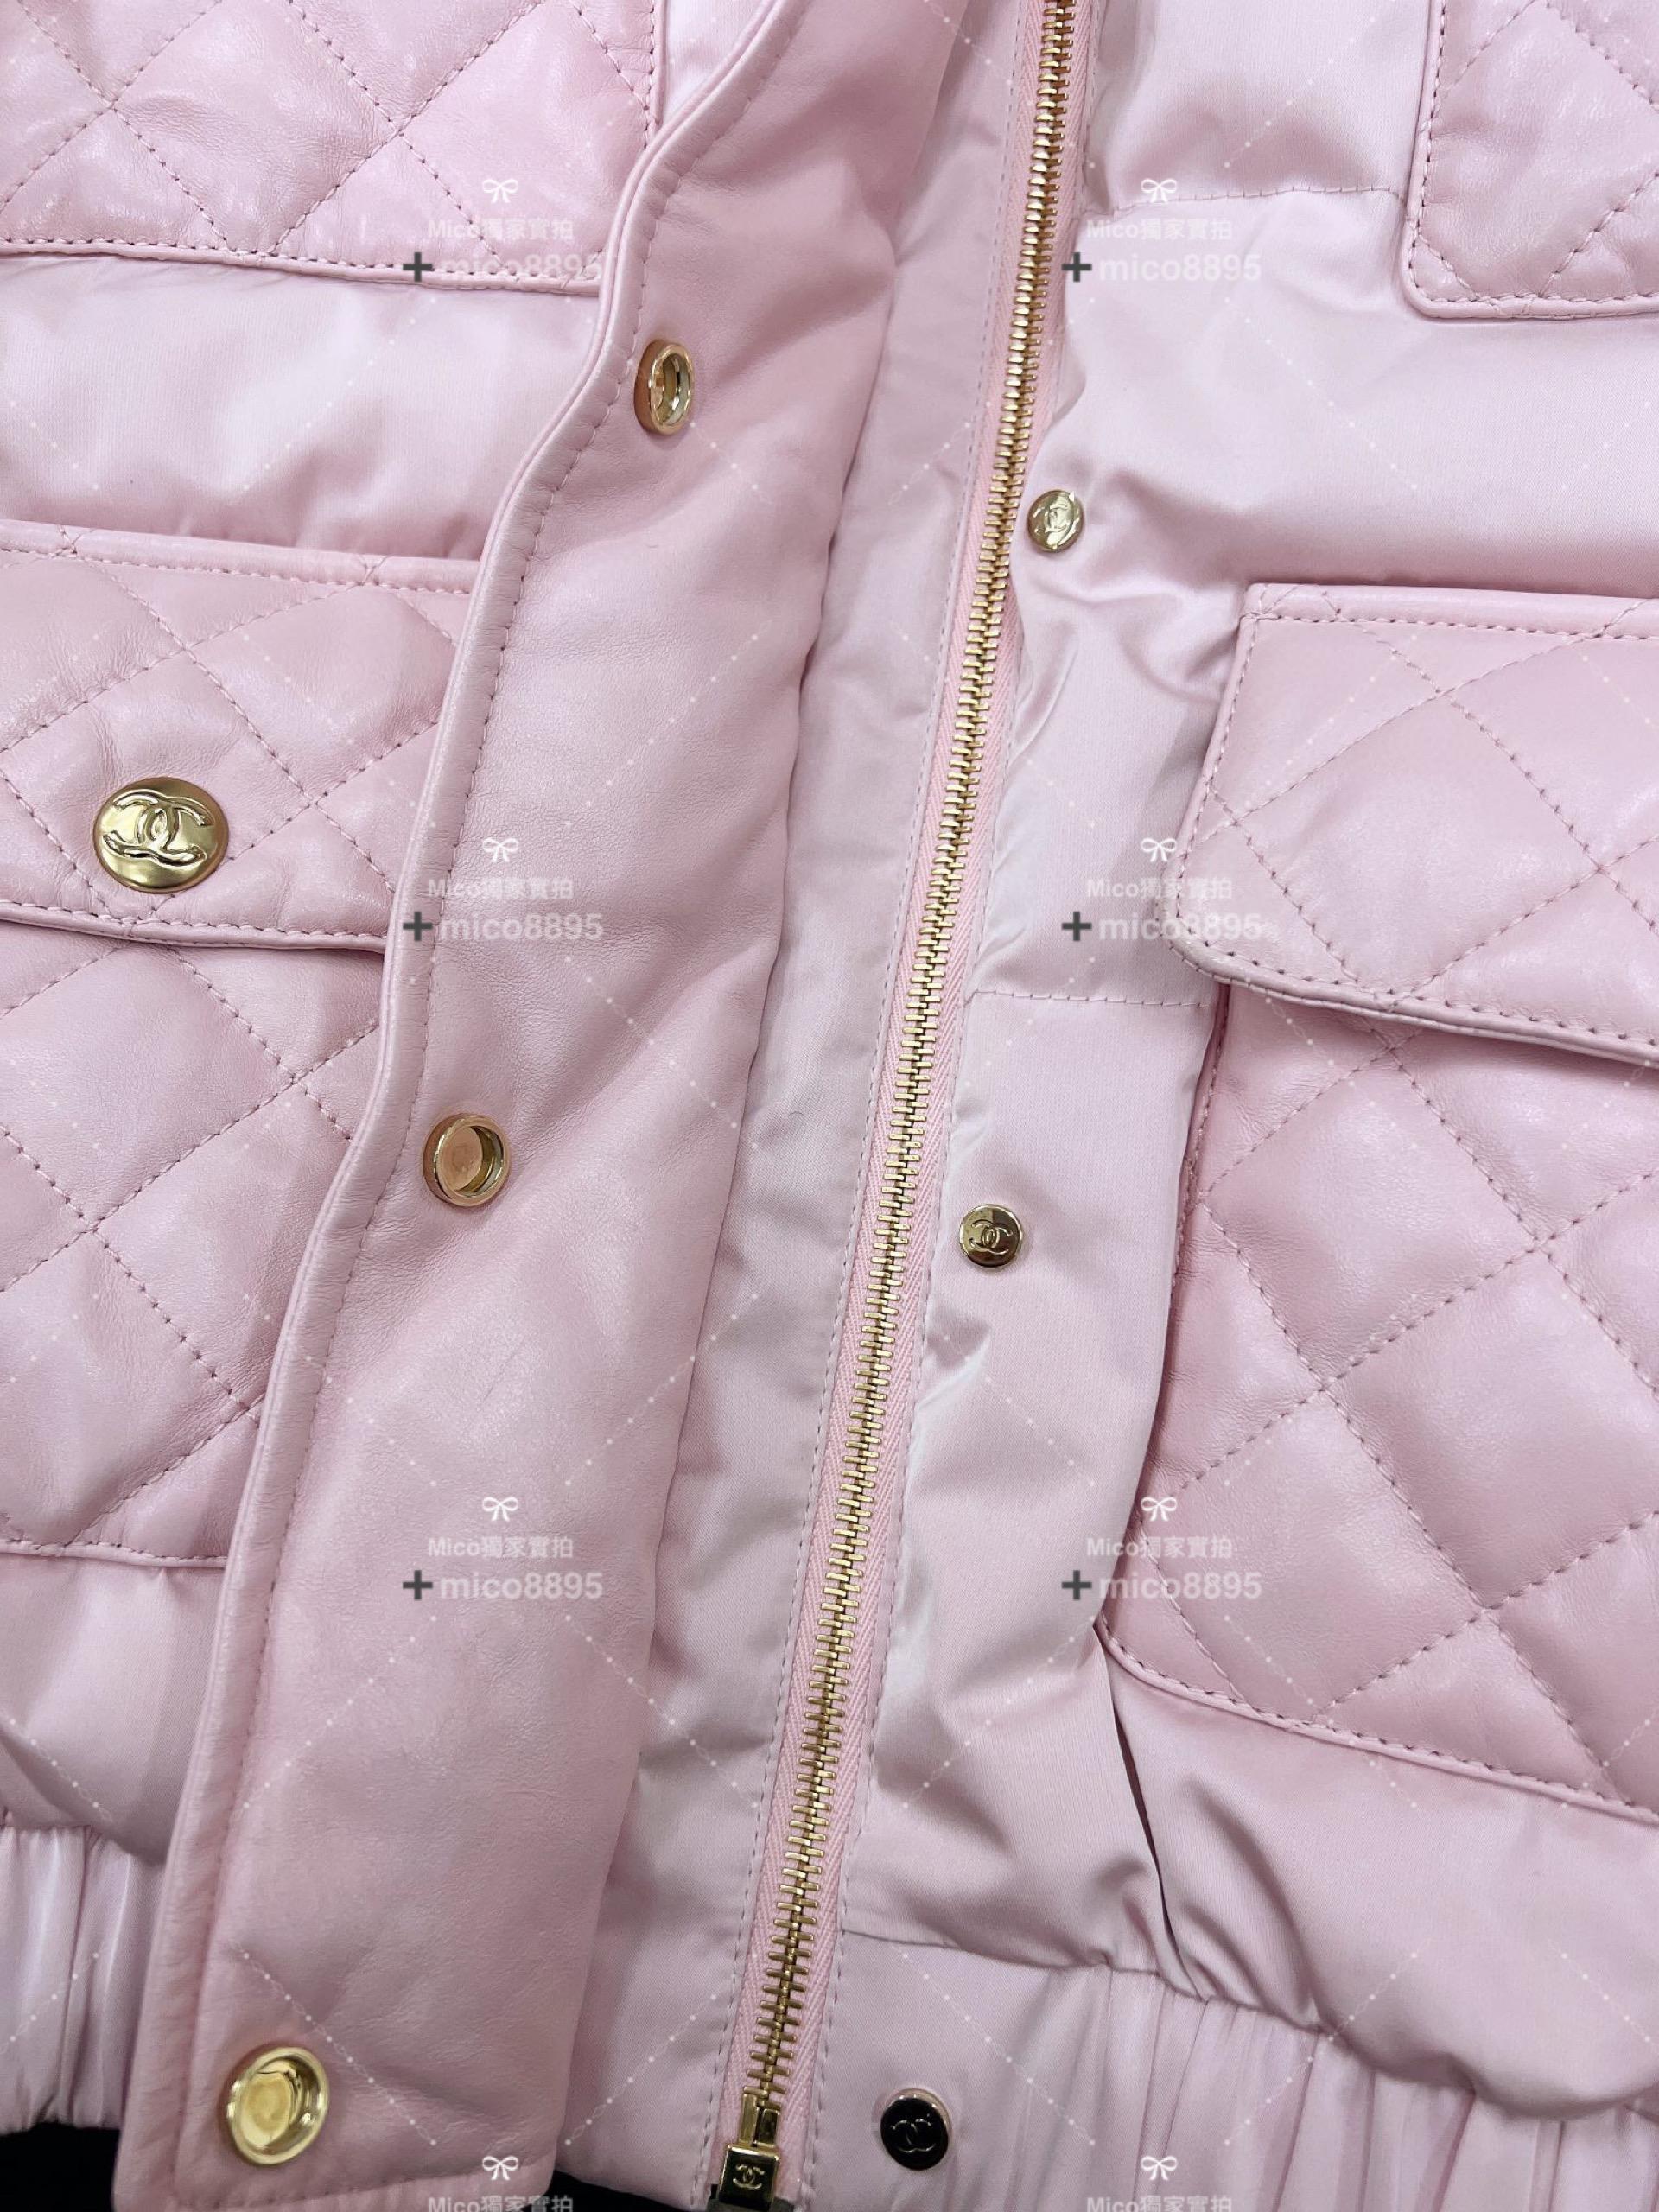 Chanel Coco Neige系列 綿羊皮羽絨服 粉色 尺碼36、38、40